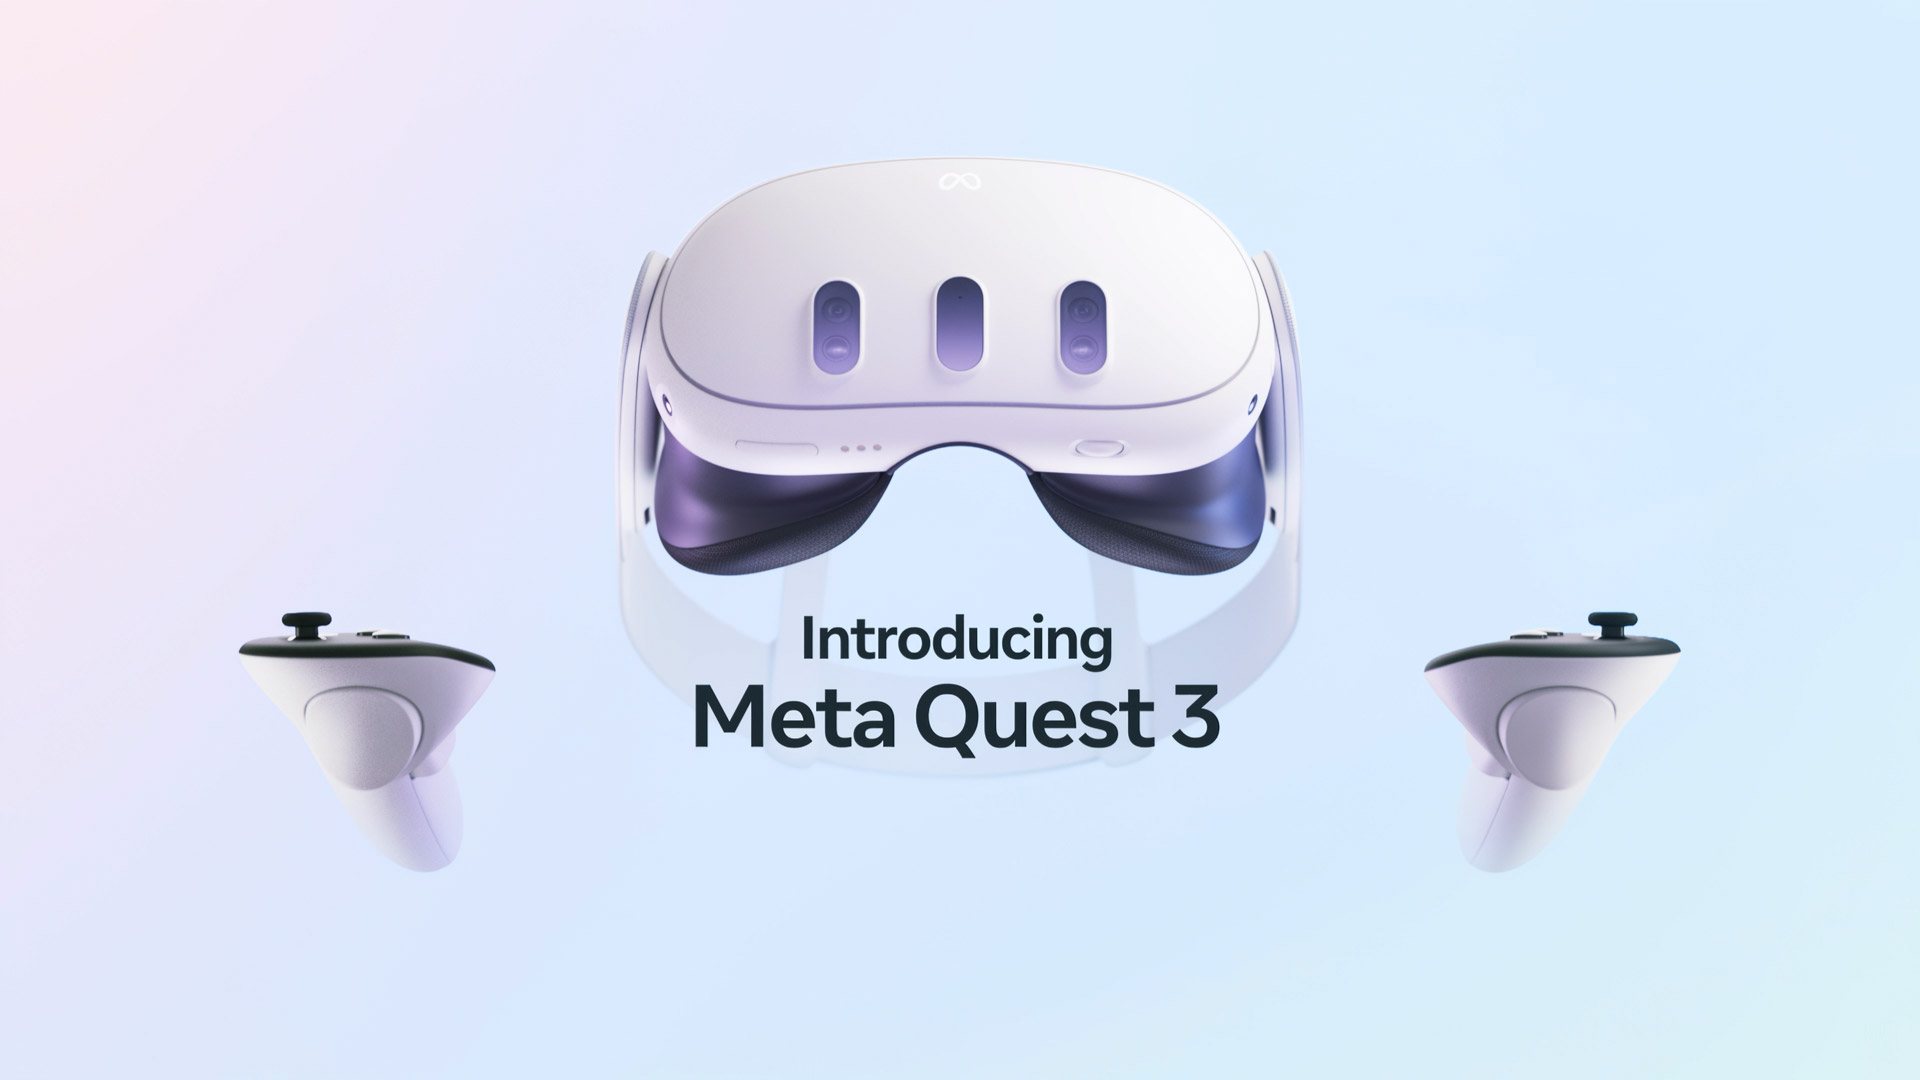 Meta Quest 3 features Qualcomm's next-gen XR processor - report